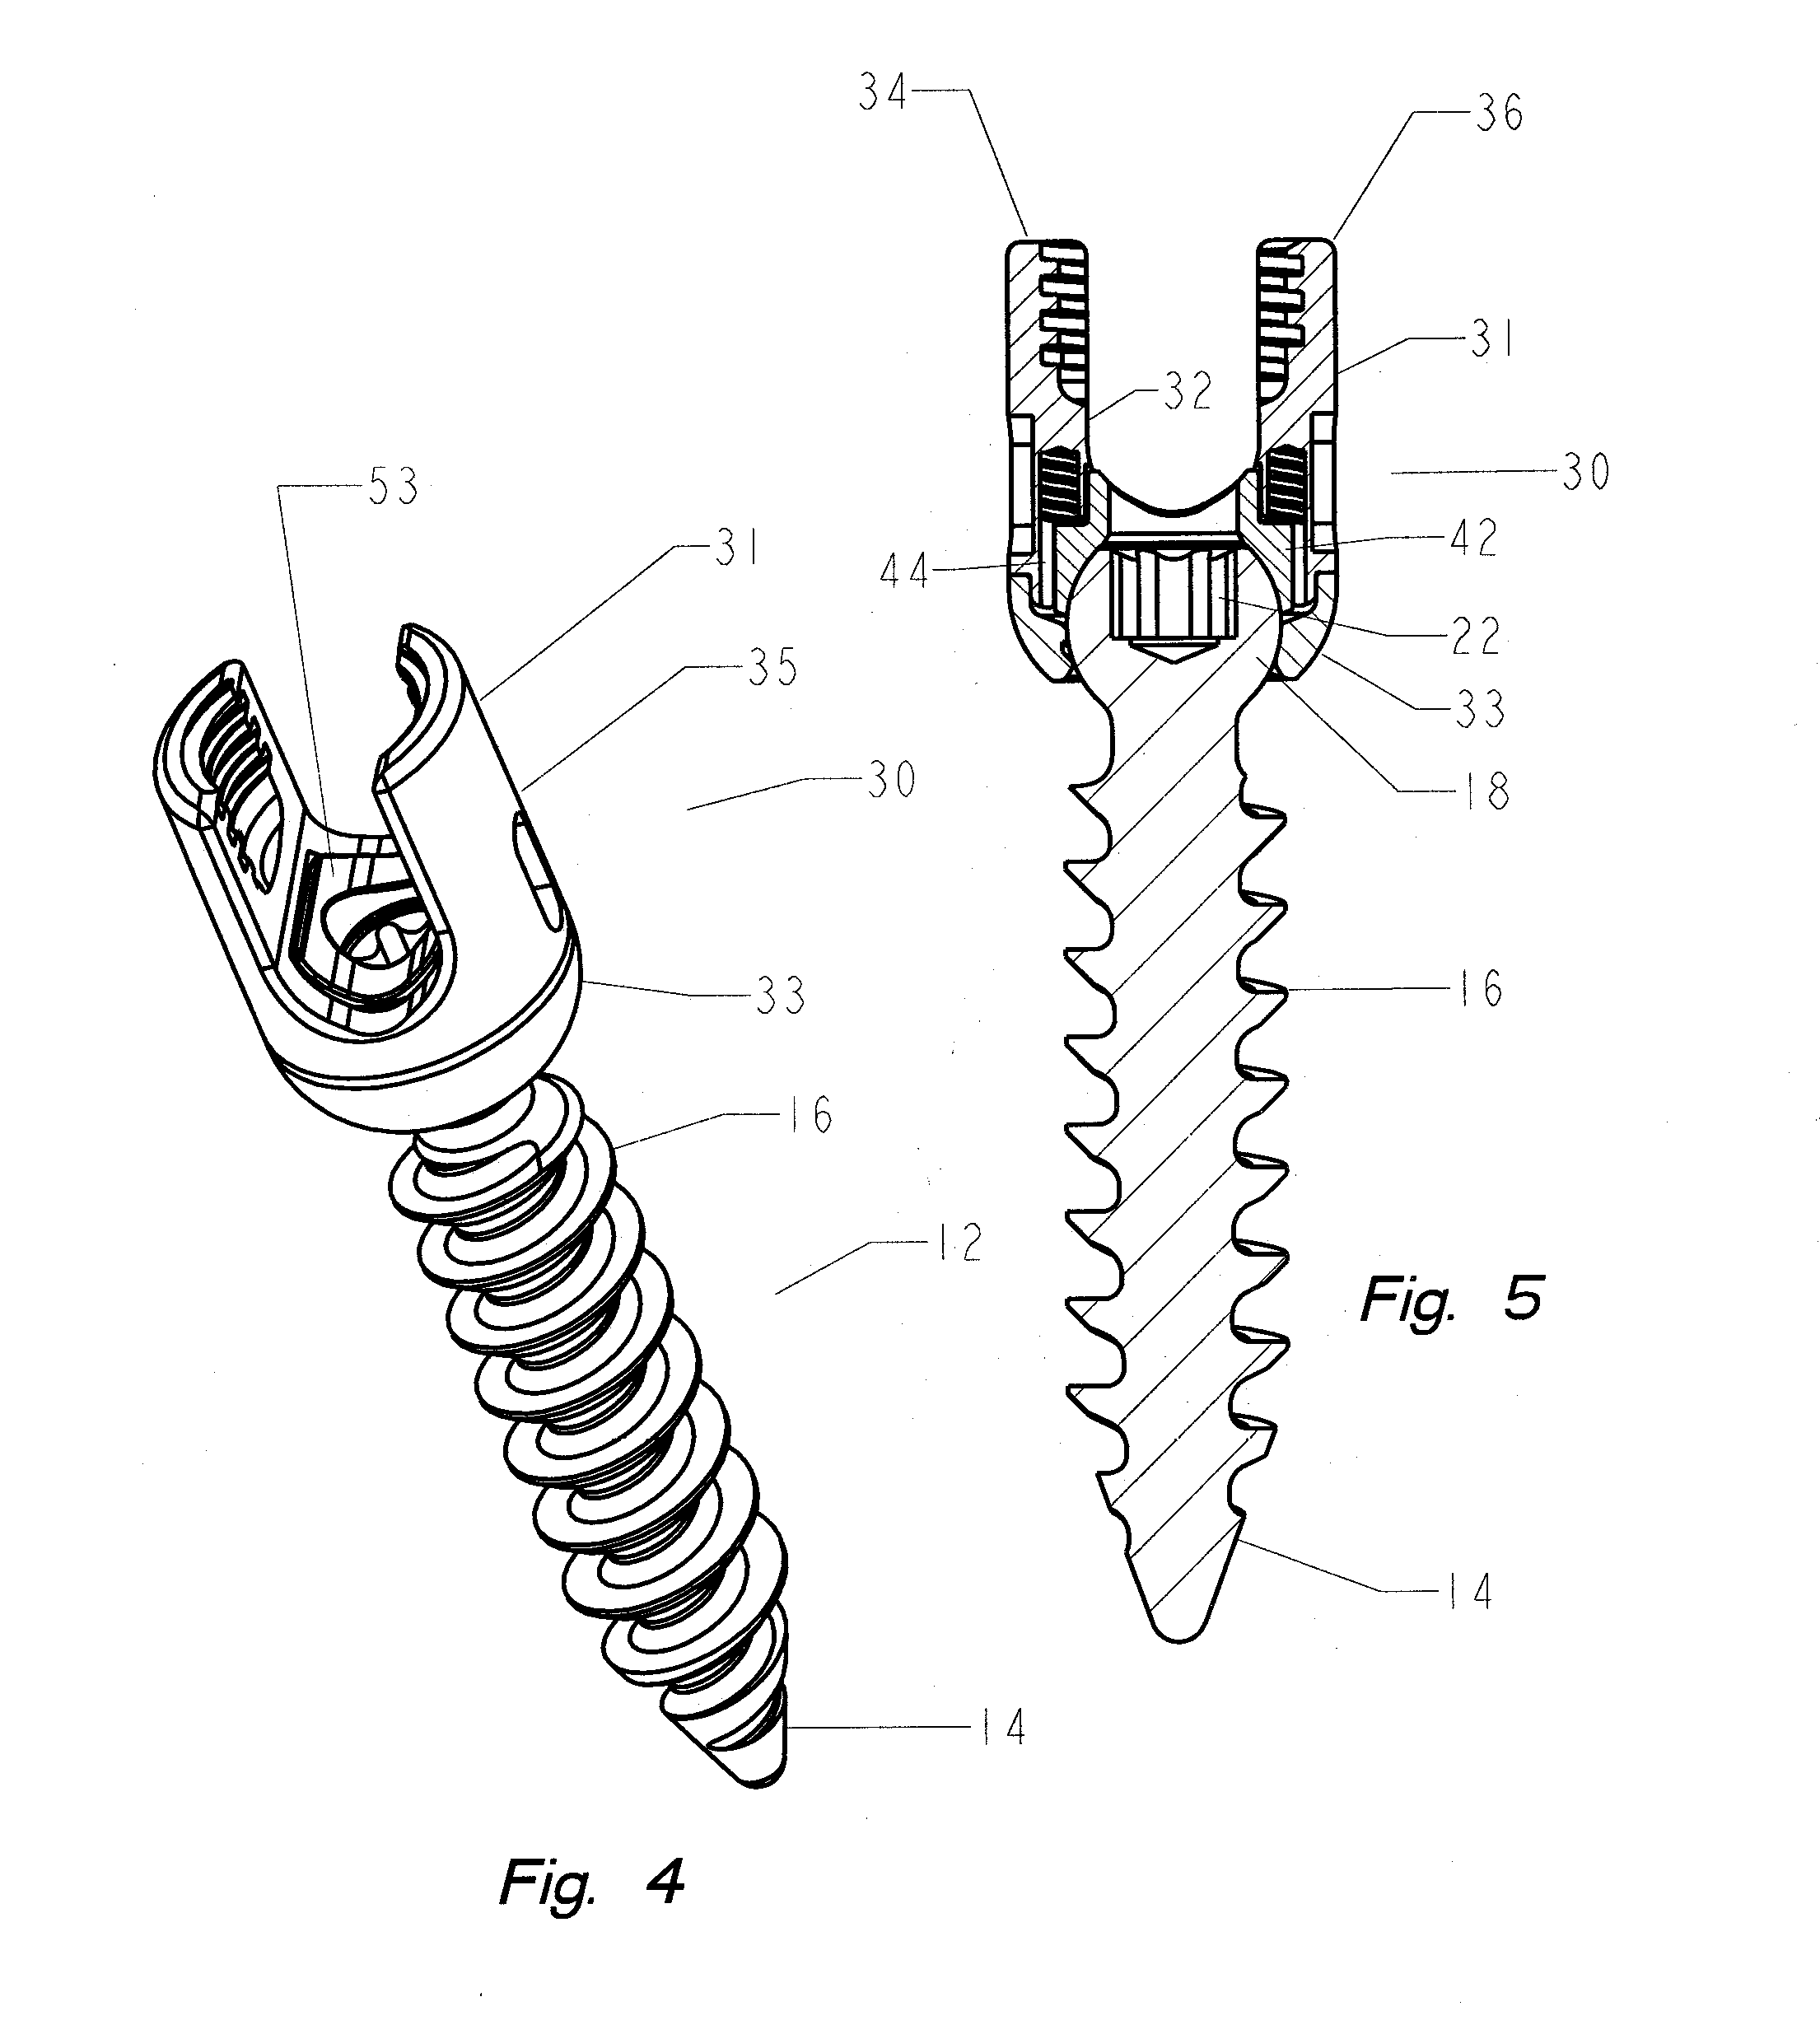 Thread-thru polyaxial pedicle screw system